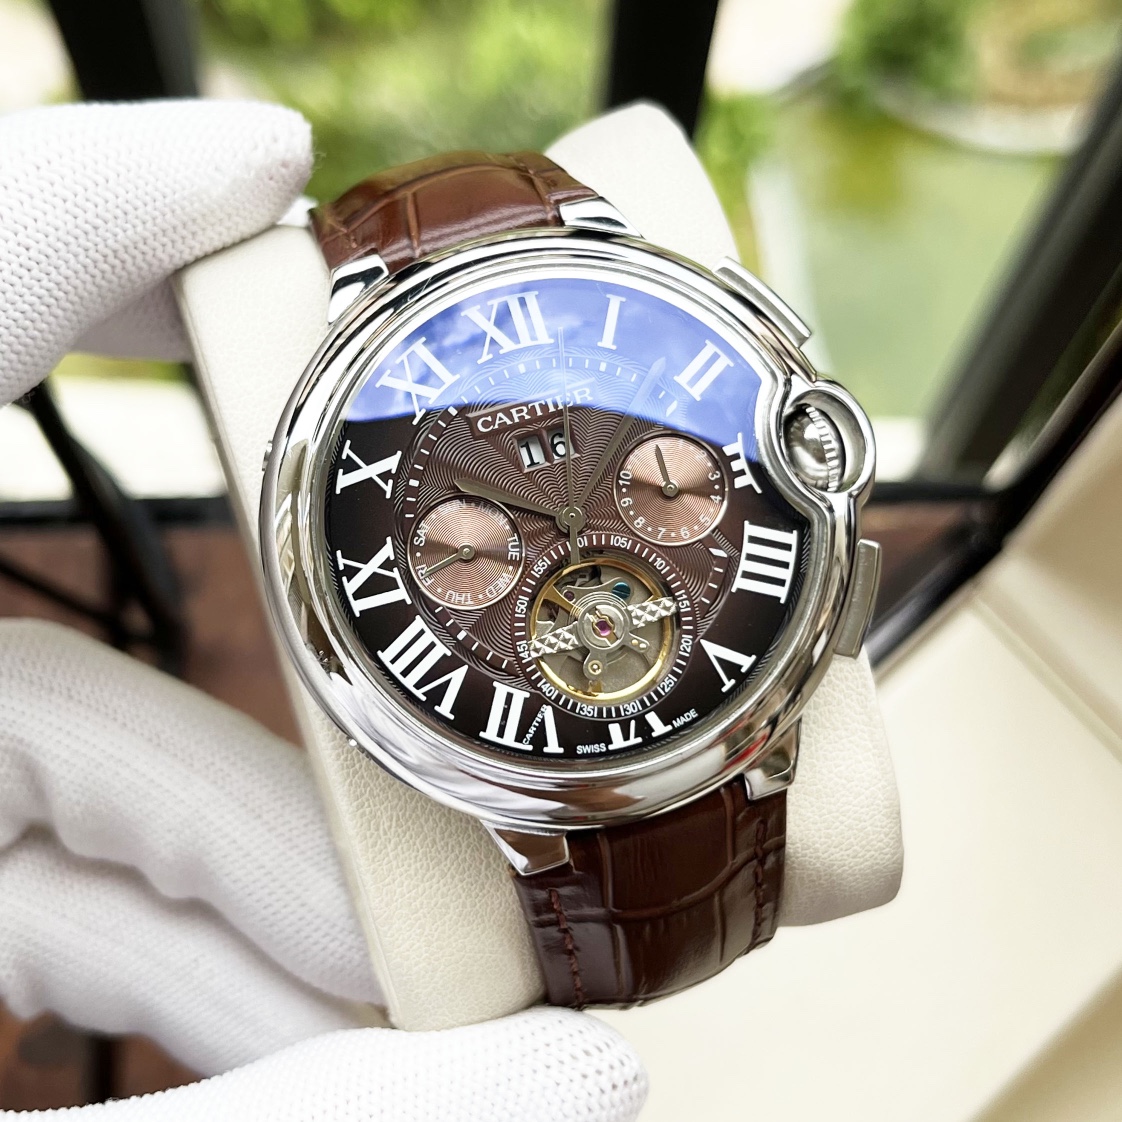 CARTIERカルティエに似てる時計スーパーコピー フランス 薄いワッチ レザー 丸い形 ブラウン_7